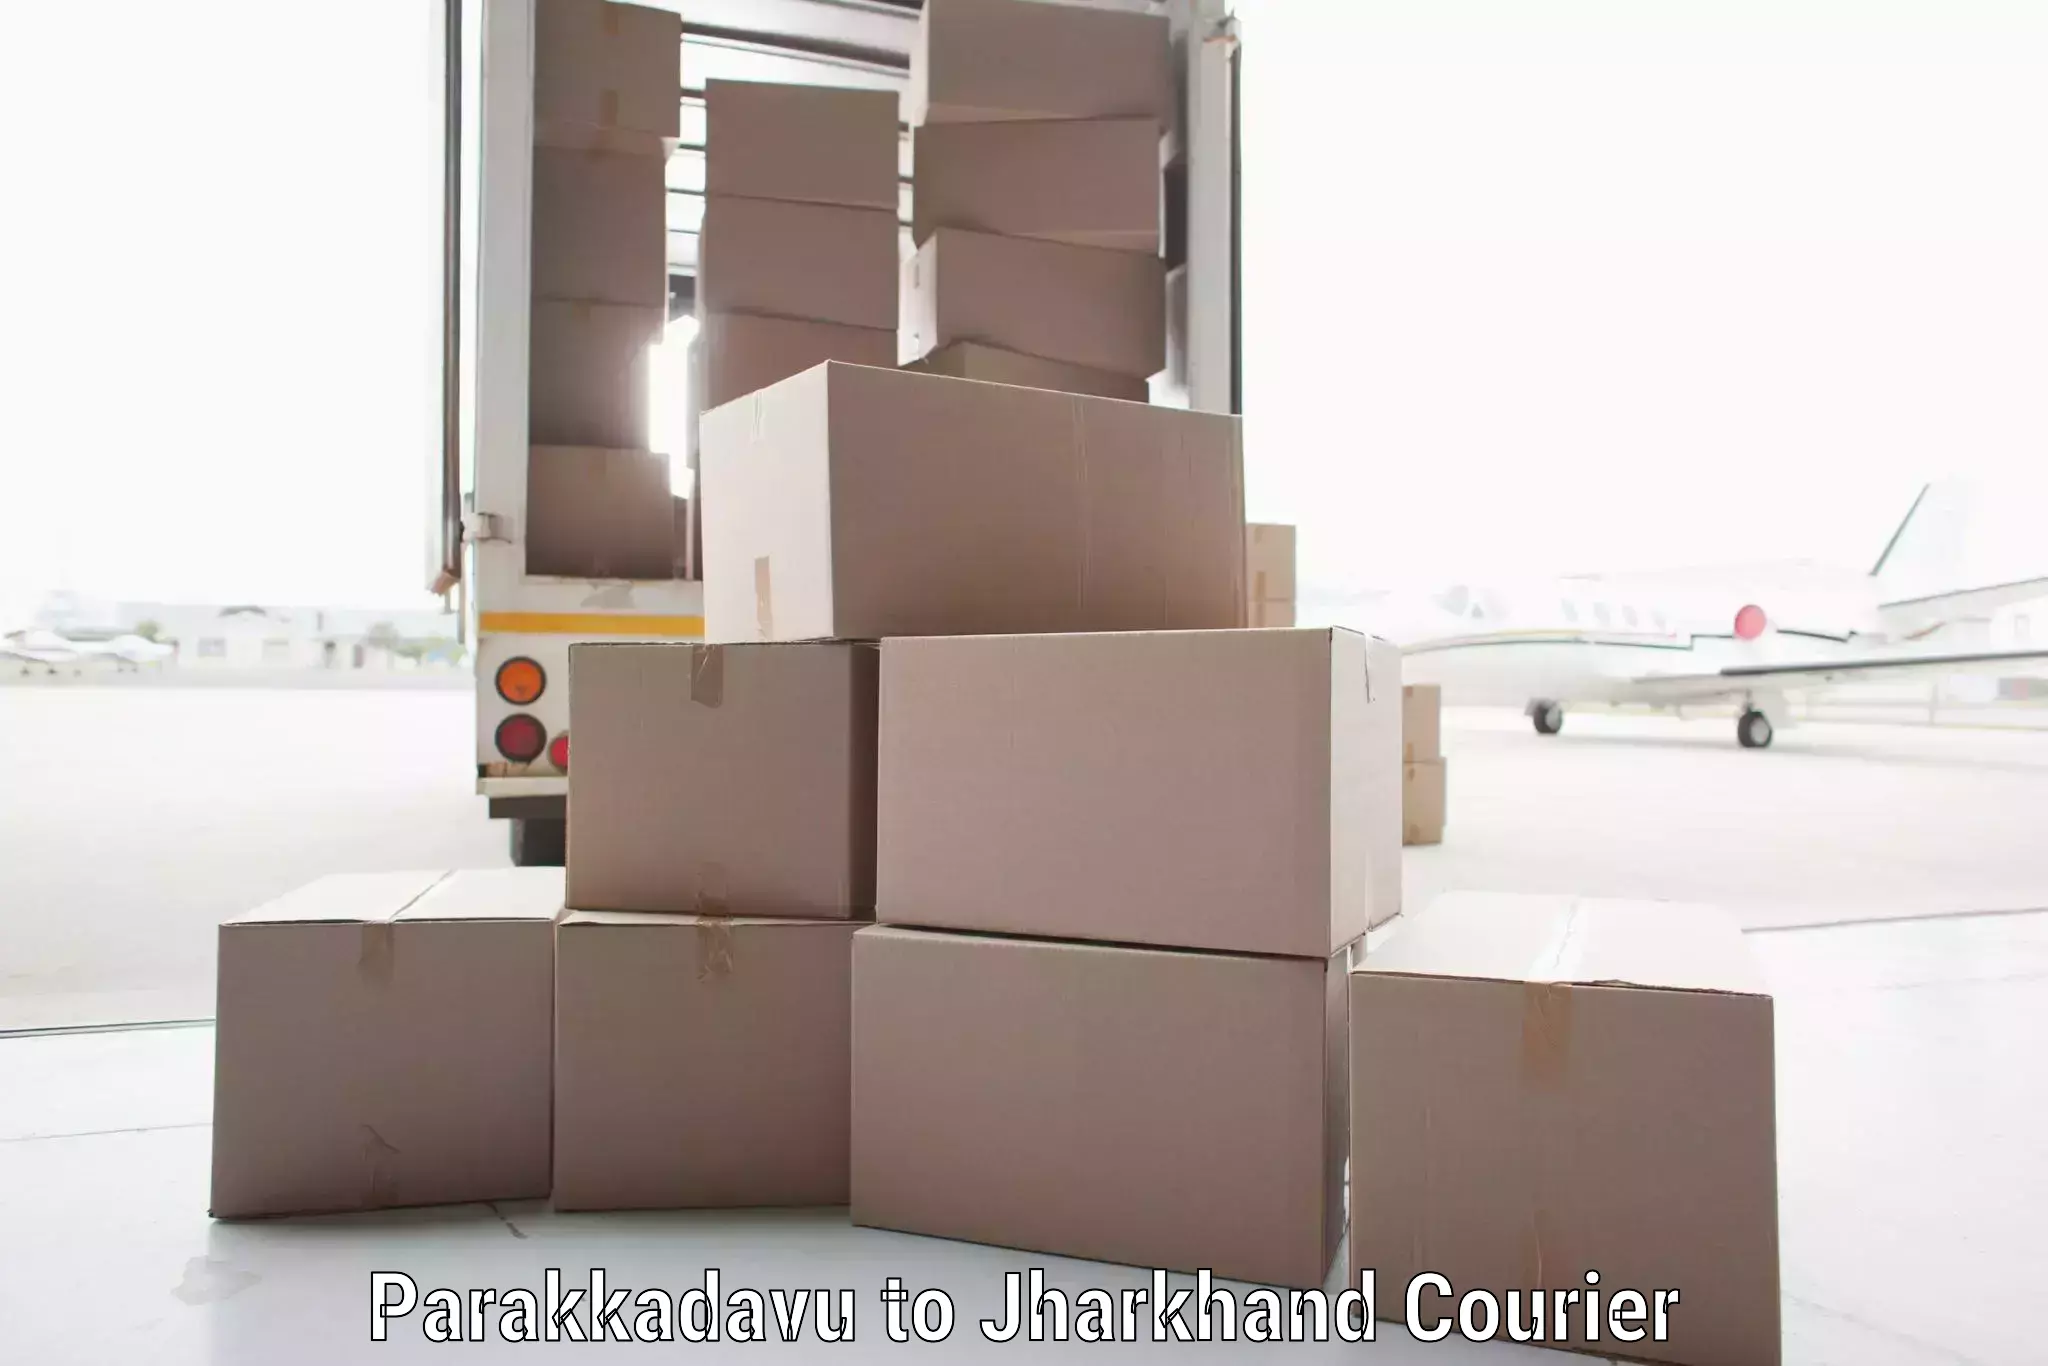 High-speed parcel service in Parakkadavu to Dhanbad